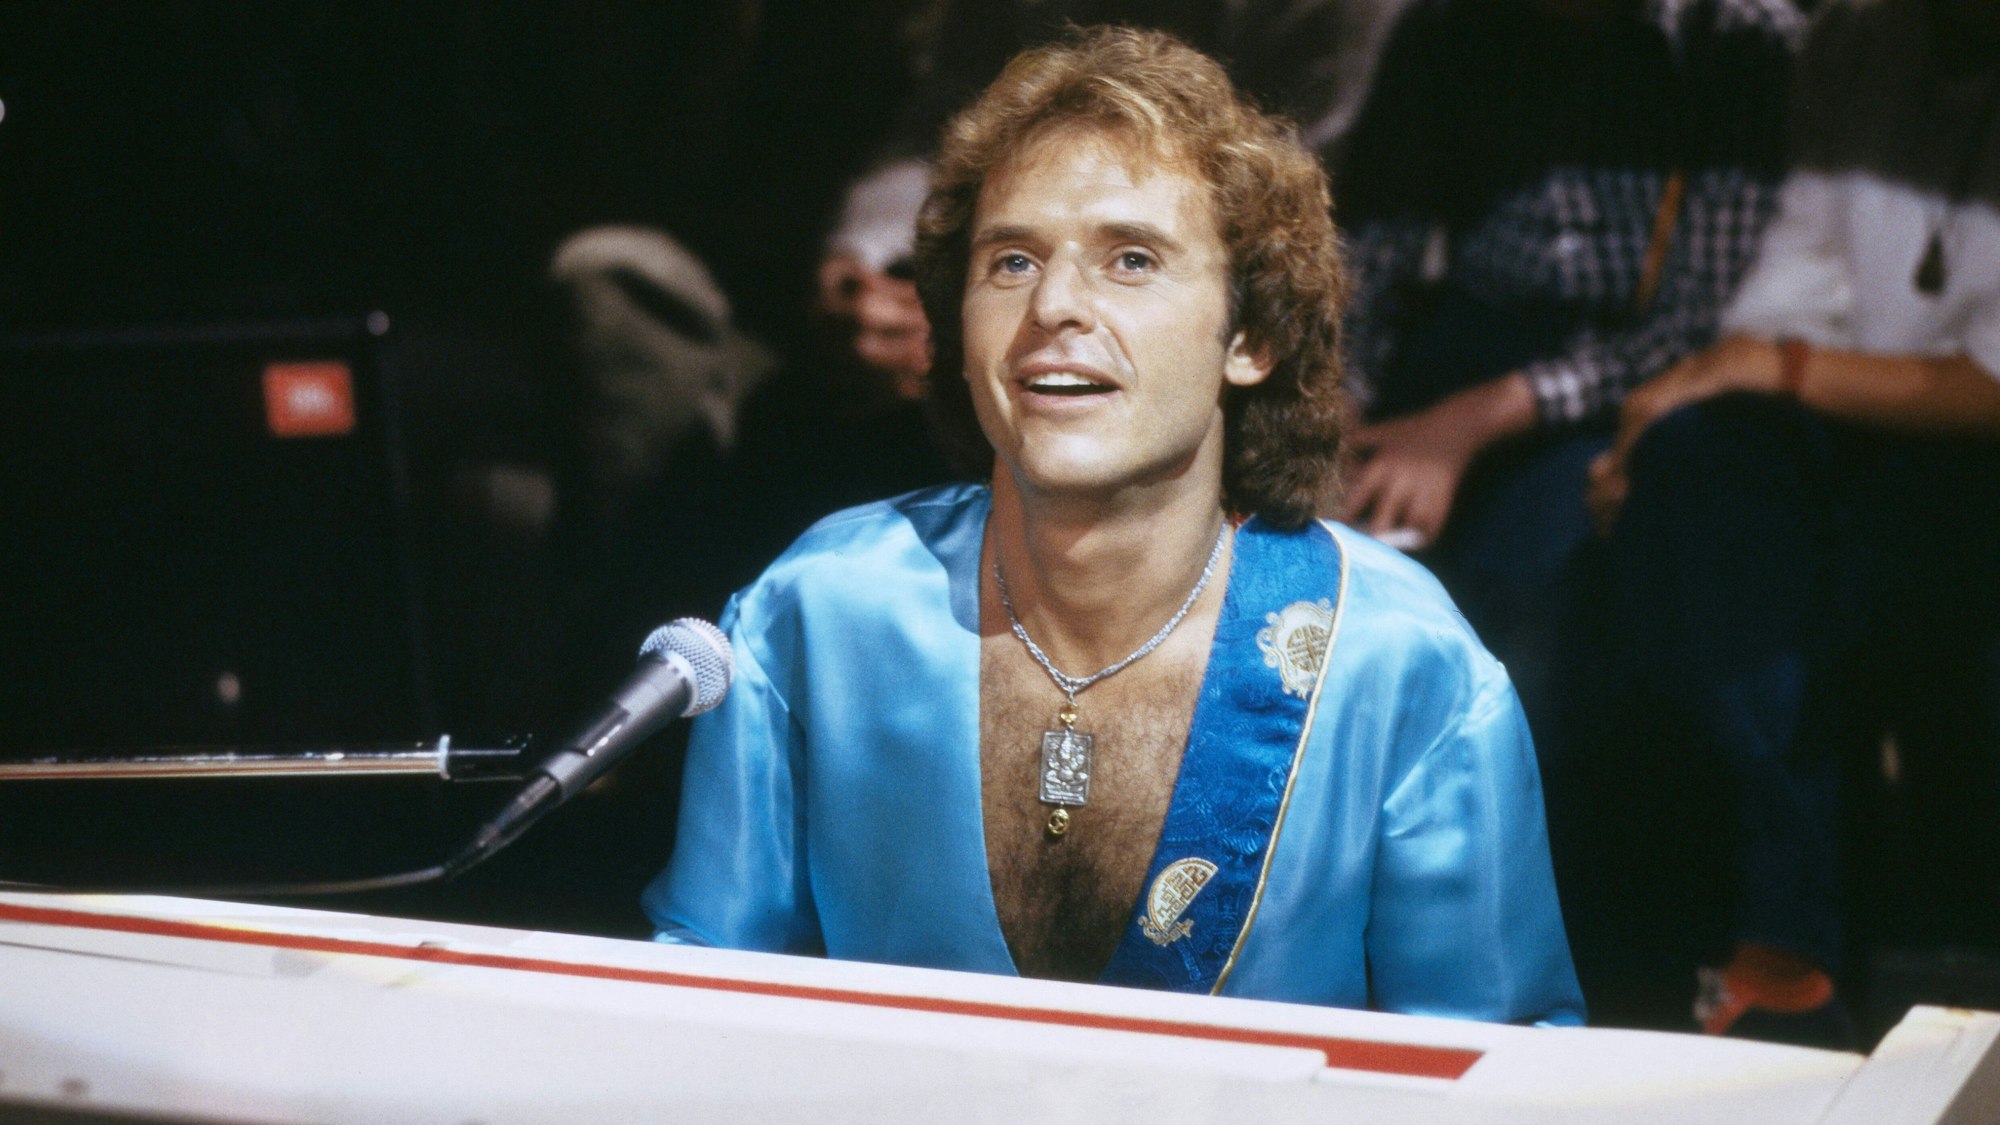 Gary Wright bei einem Auftritt am Piano, 1978.